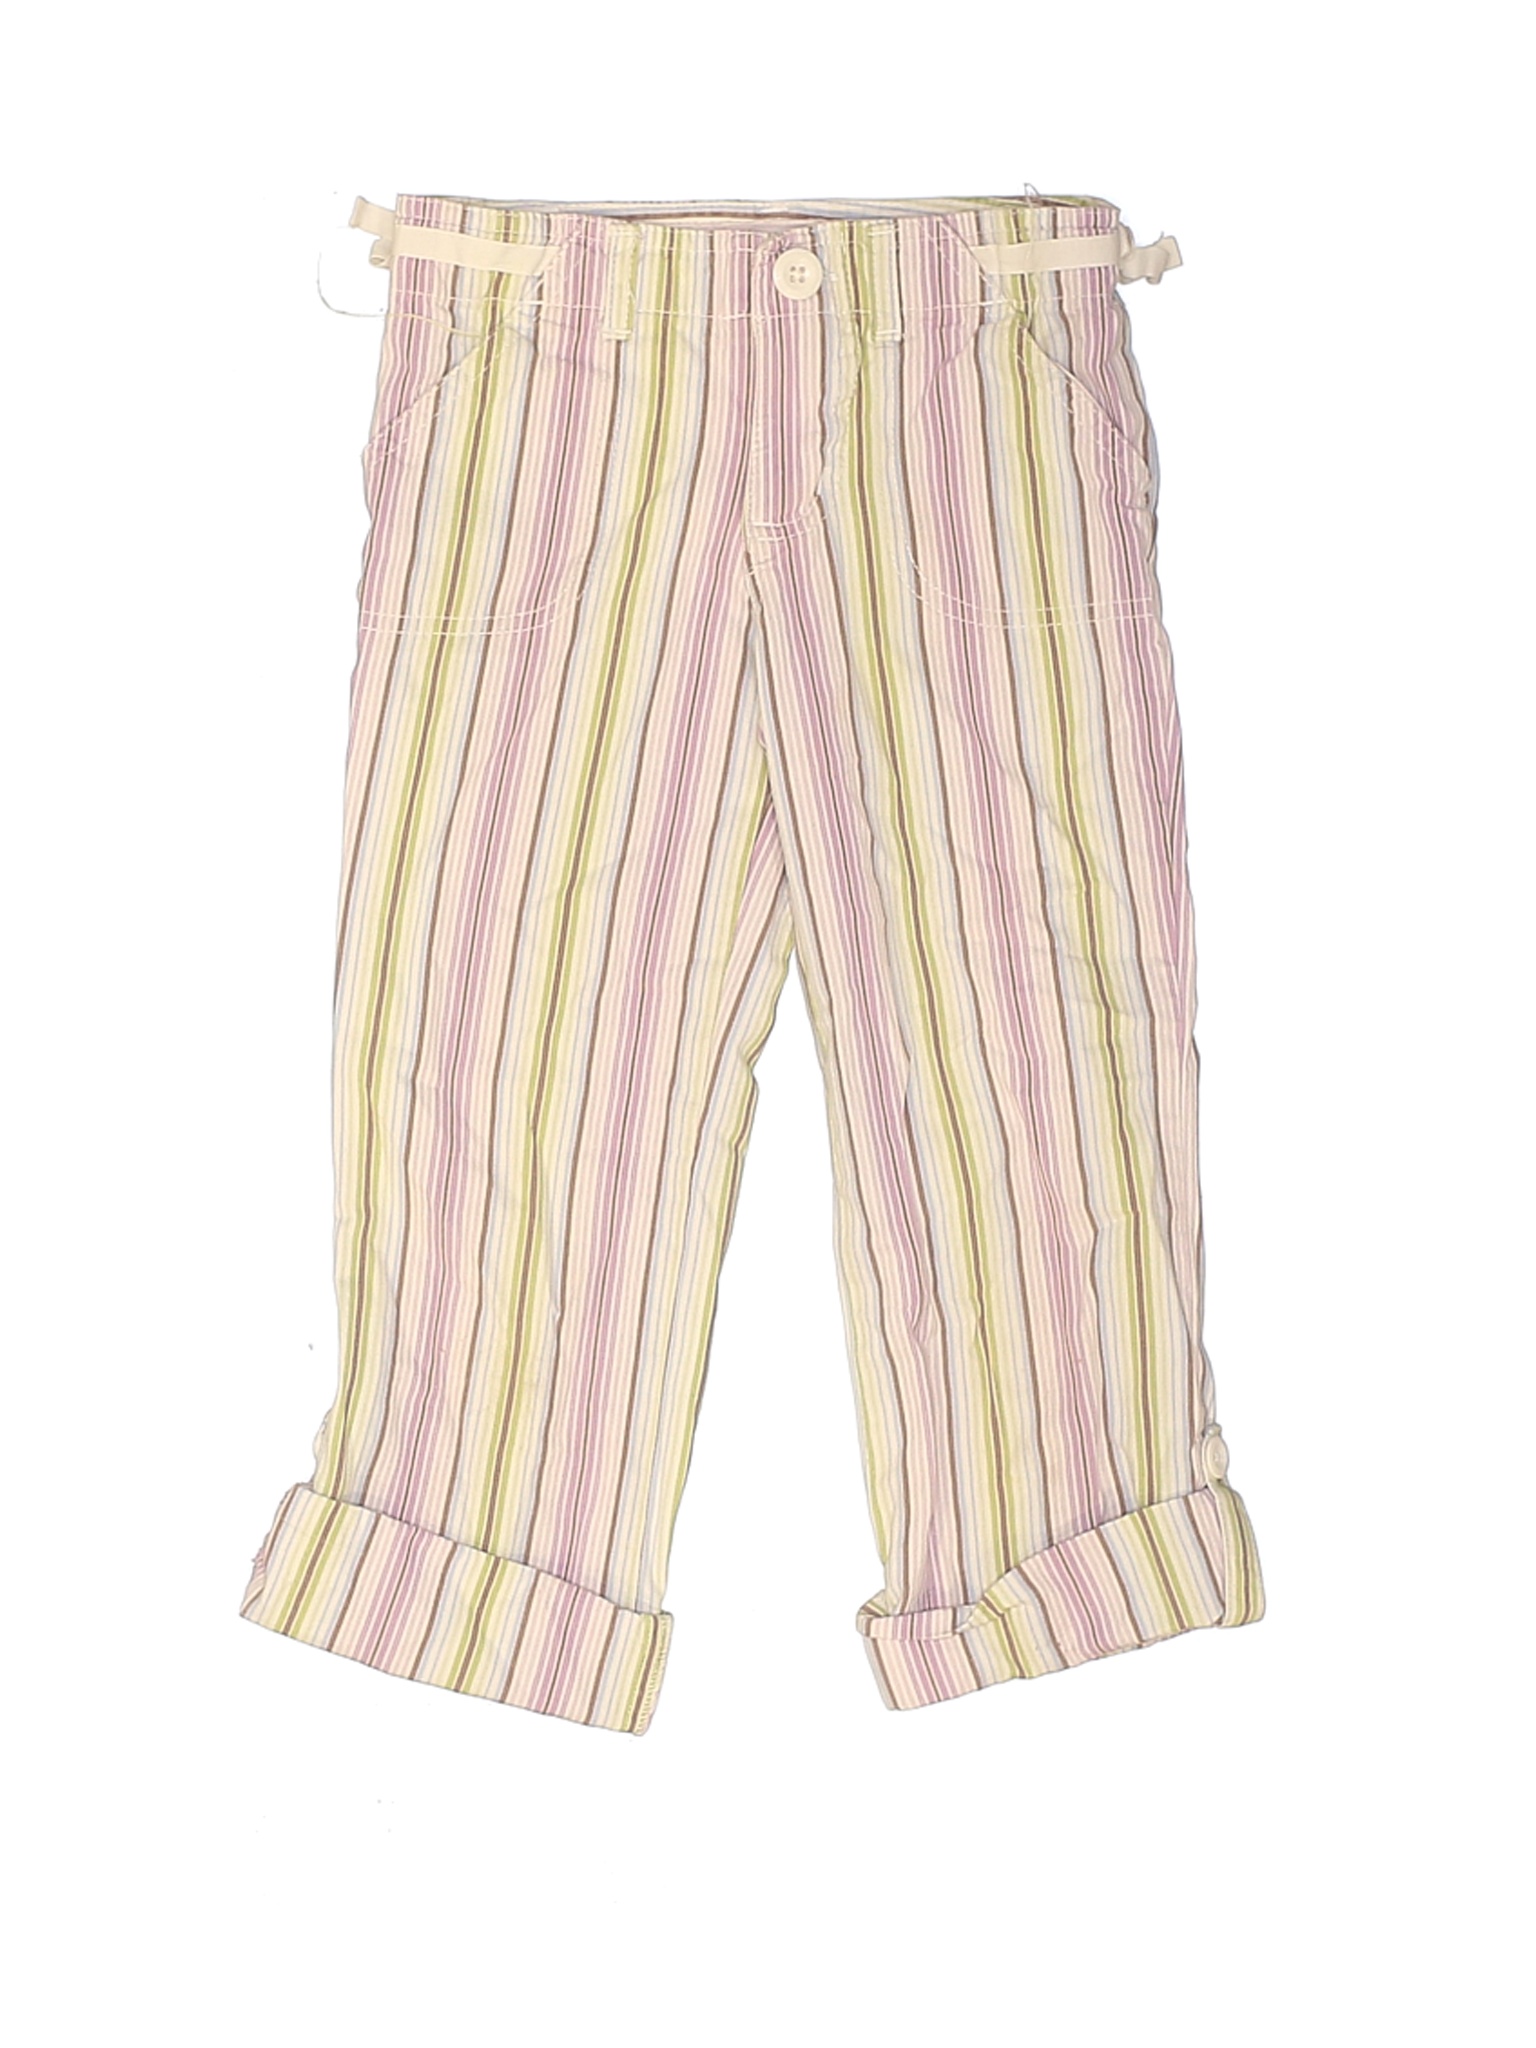 Genuine Kids from Oshkosh Girls Purple Casual Pants 5T | eBay